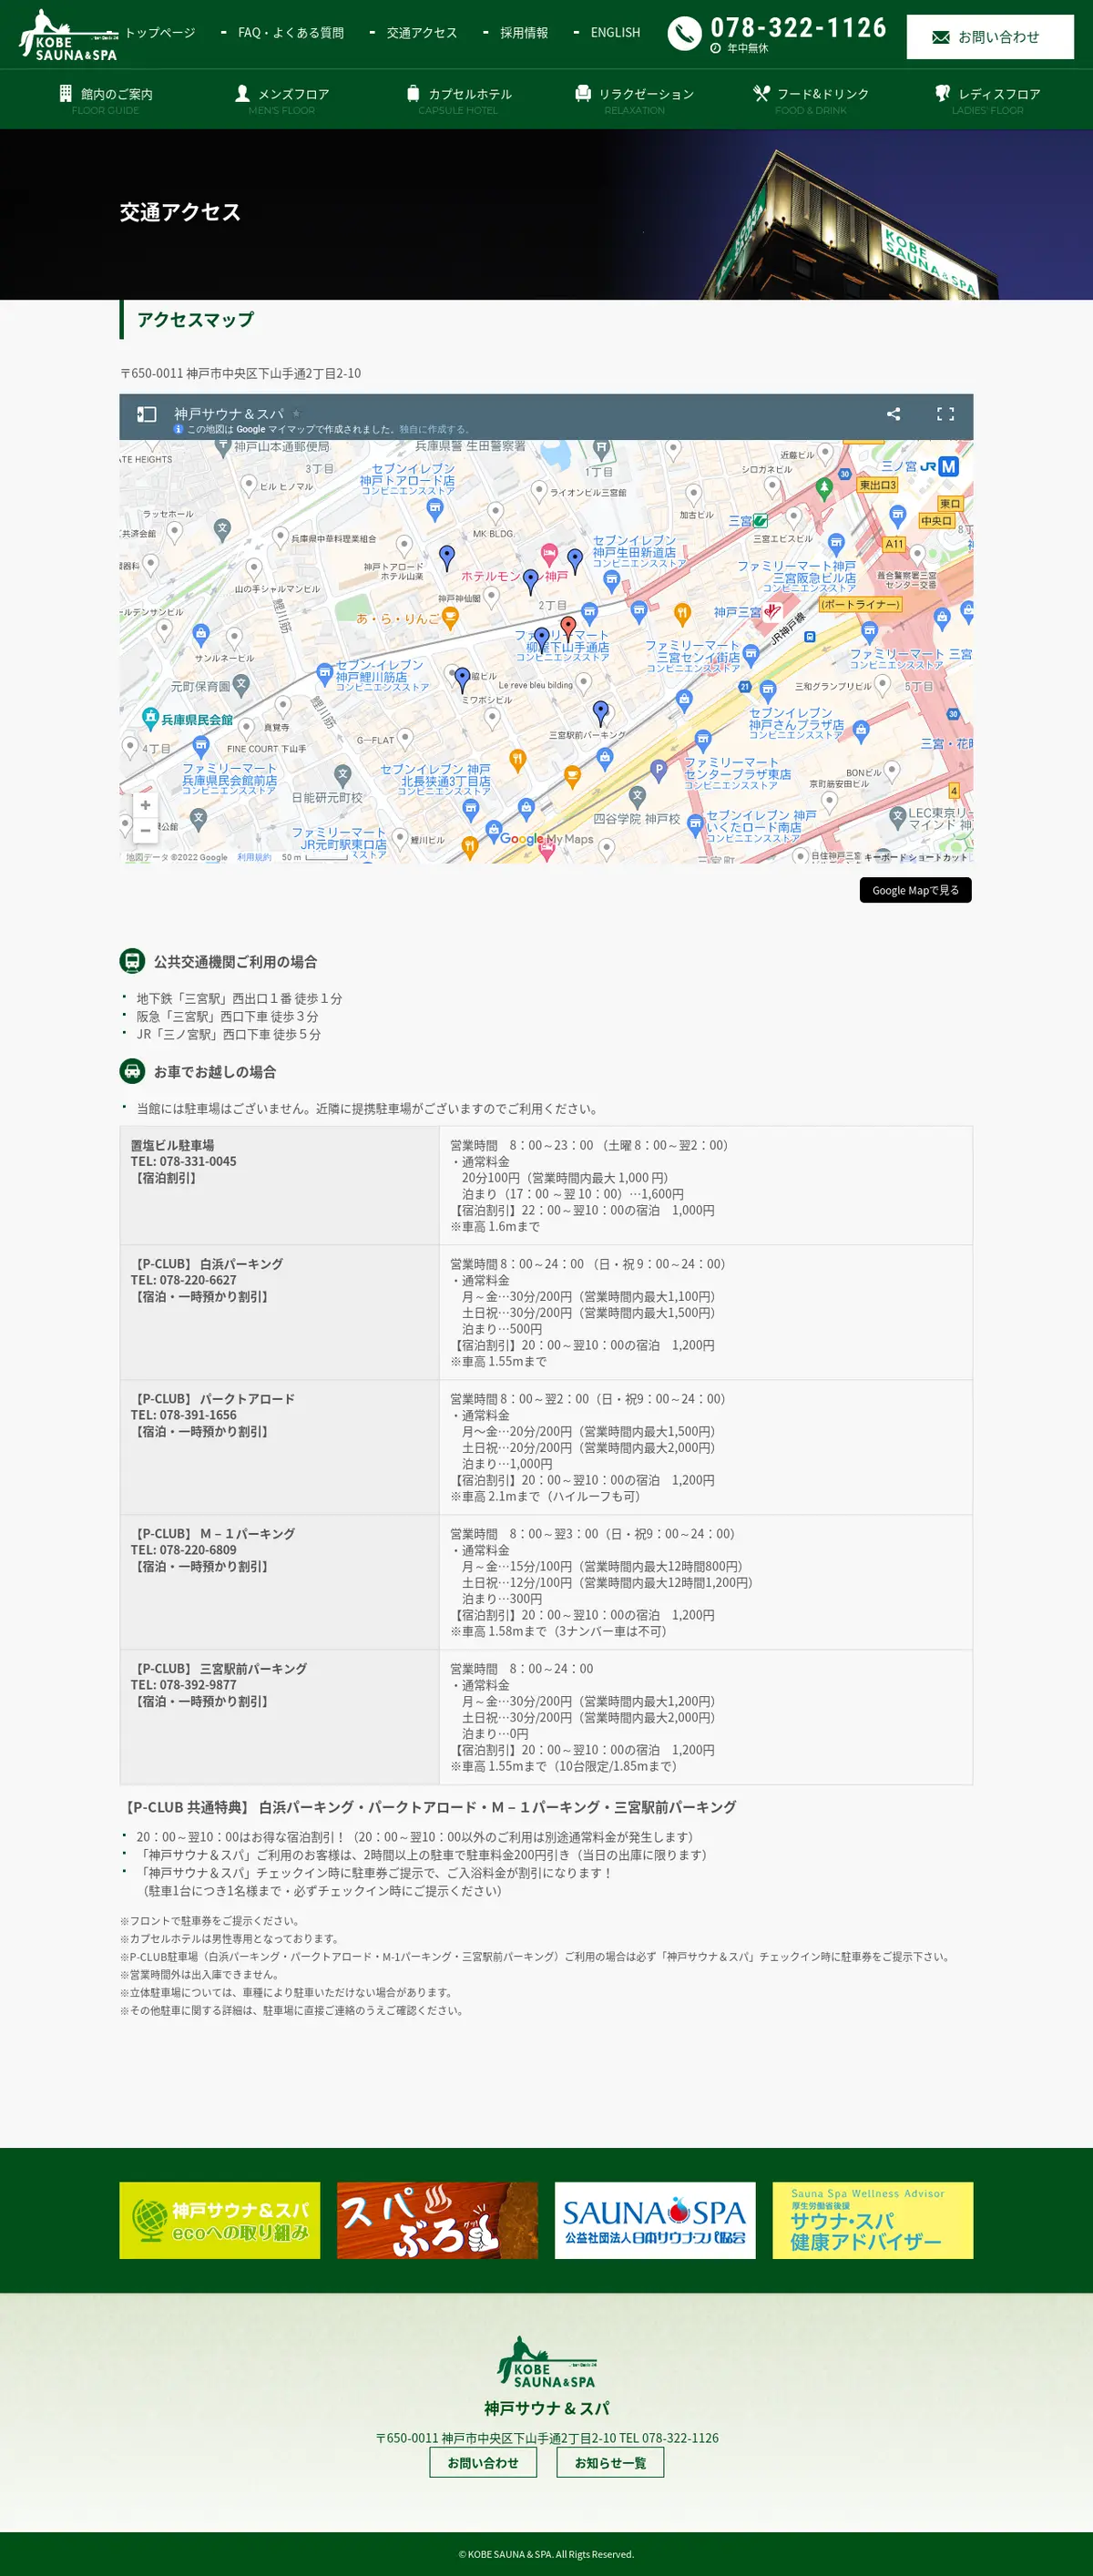 キャプチャ画面 会社名:神戸サウナ & スパプロジェクト名:KOBESAUNA＆SPA 画面名:アクセス・地図・マップ詳細 デバイス名:PCカテゴリ:旅行・ホテル・旅館タグ:PC,アクセス・地図・マップ詳細